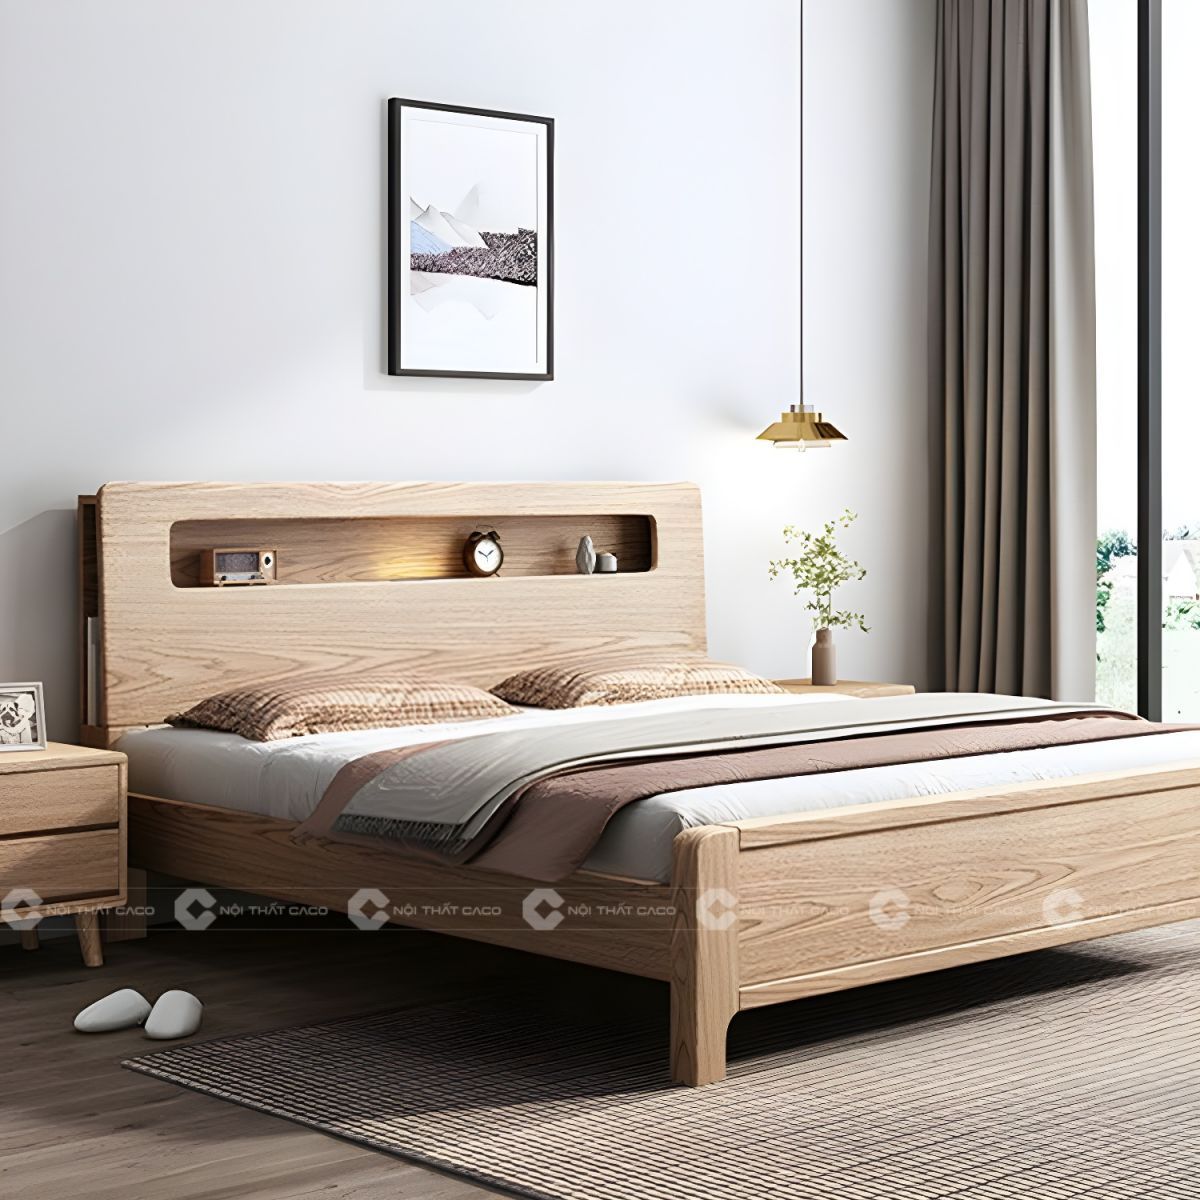 Giường ngủ gỗ tự nhiên có kệ đầu giường thanh lịch